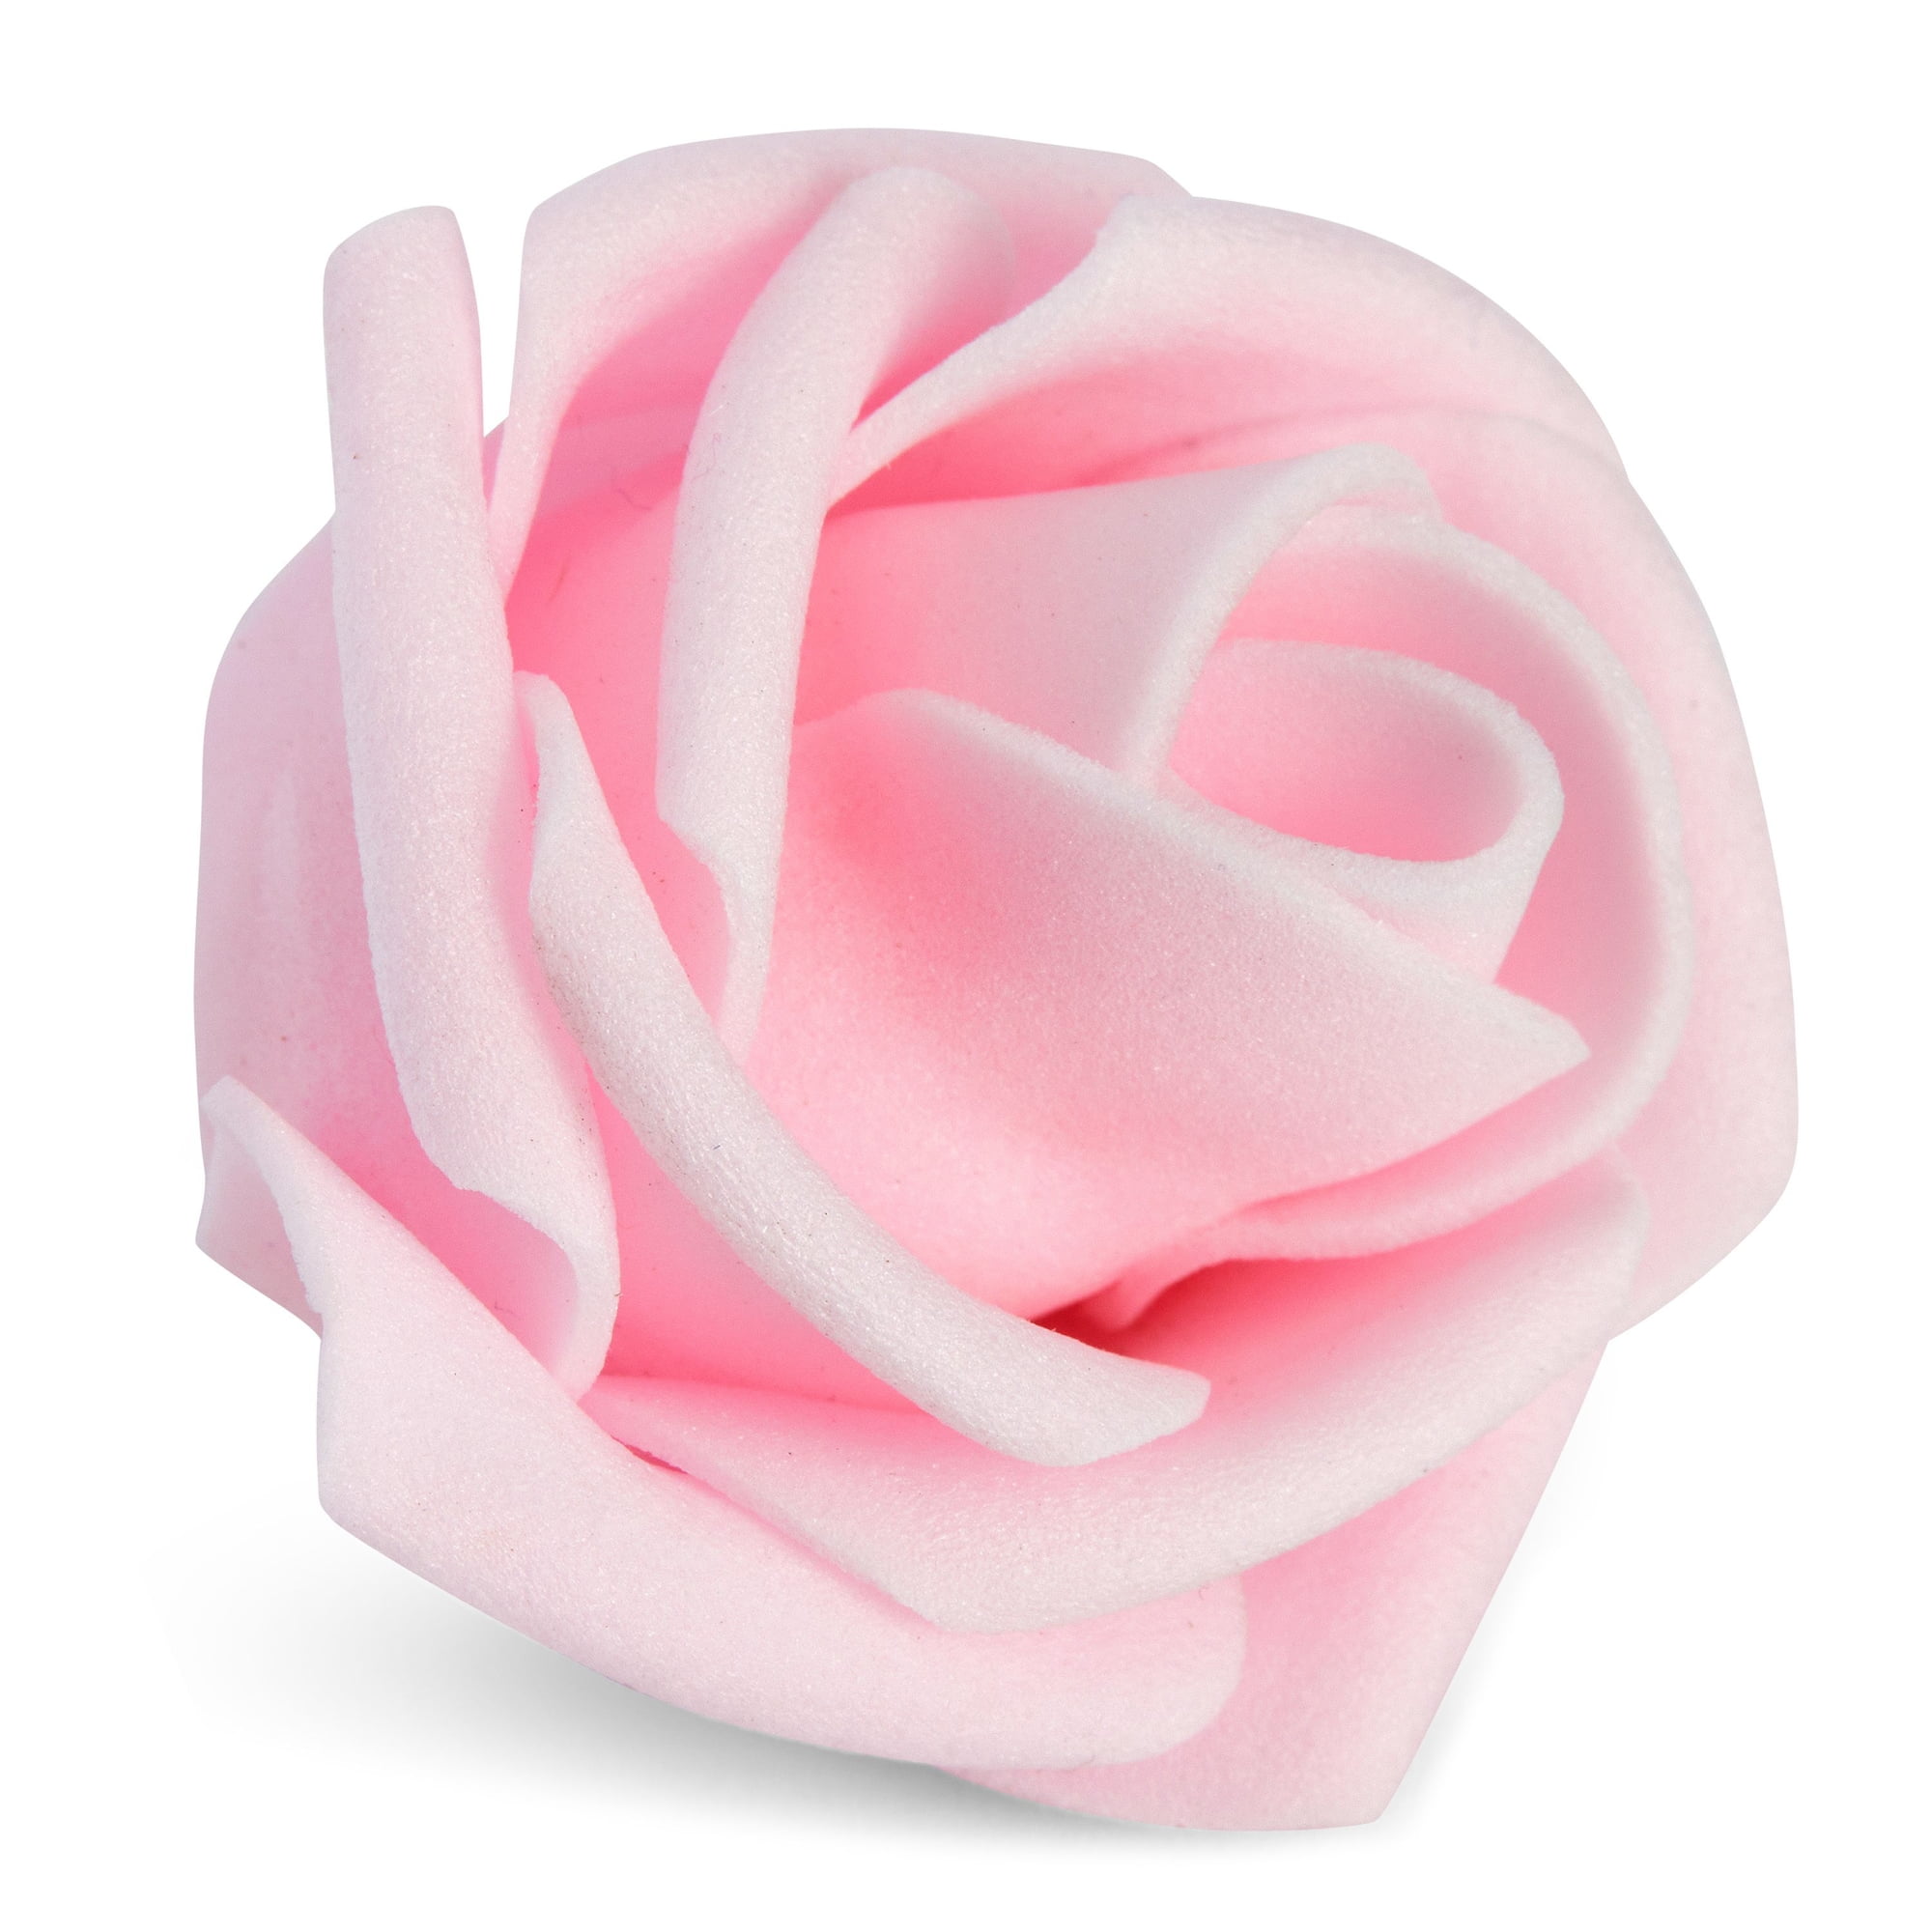 Lansdowns Artificial Flower Foam Rose 25pcs Real Looking Fake Rose